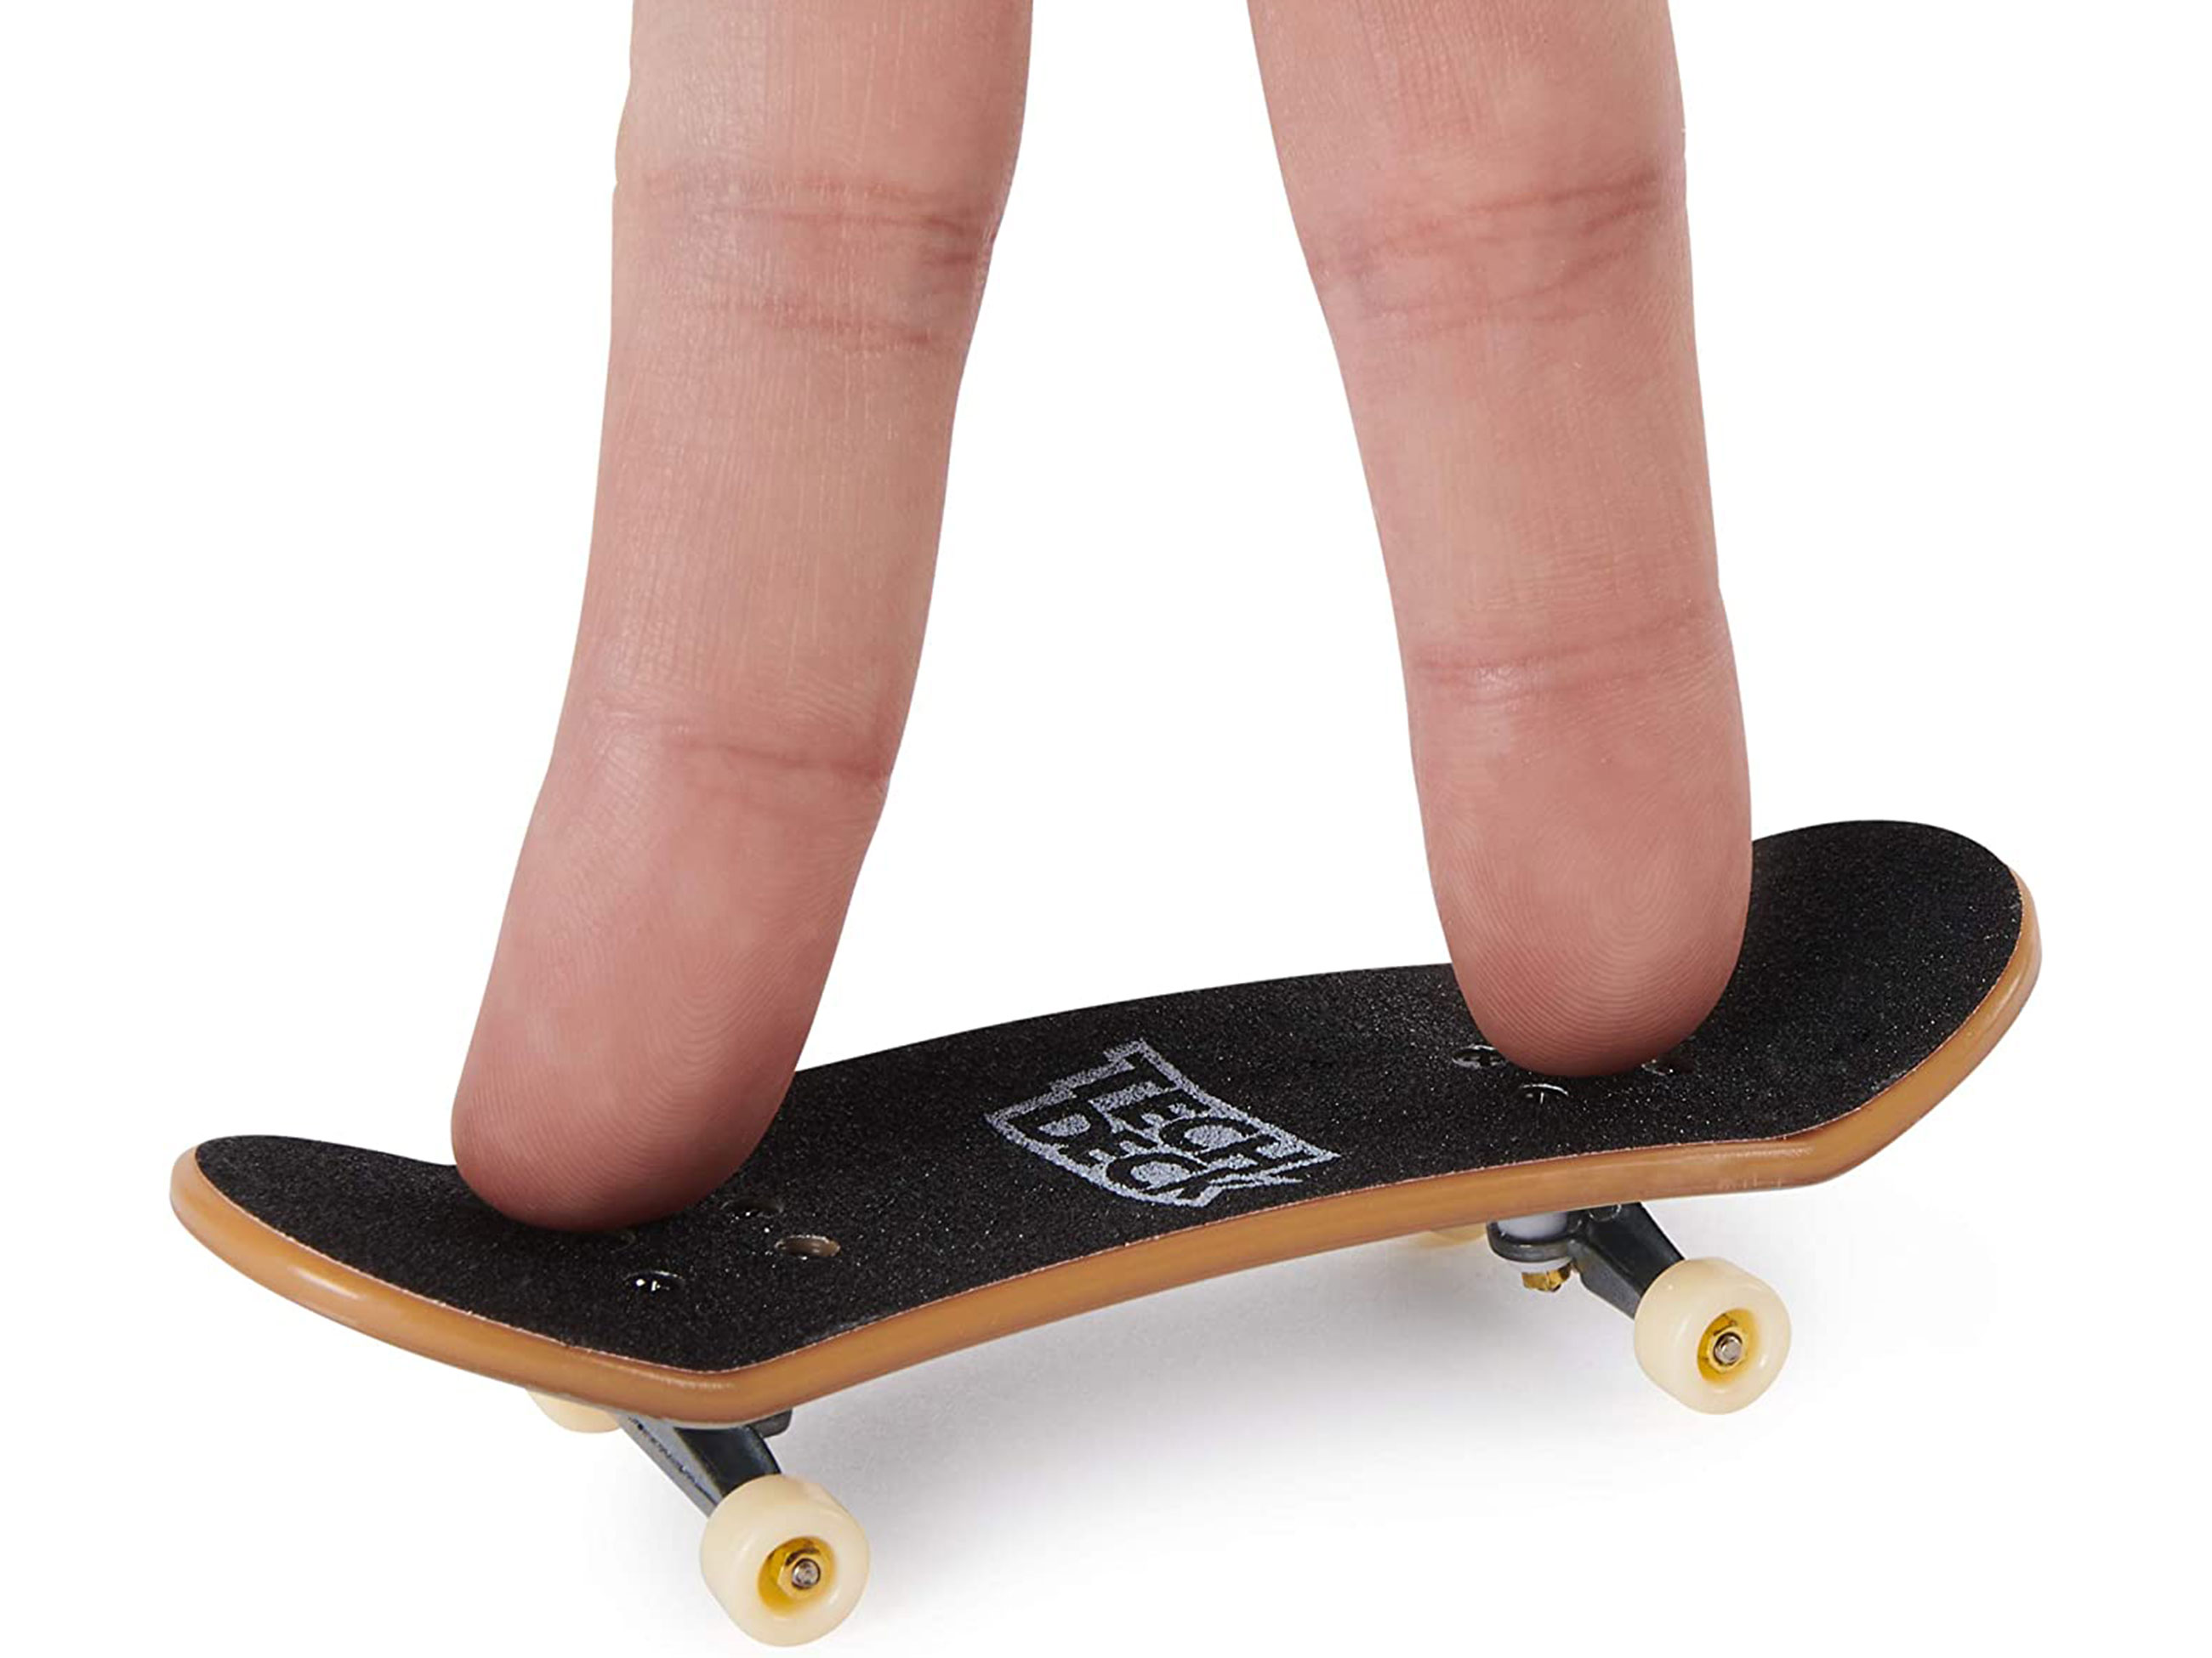 Skate de Dedo Tech Deck Pack com 6 Sortido -Sunny